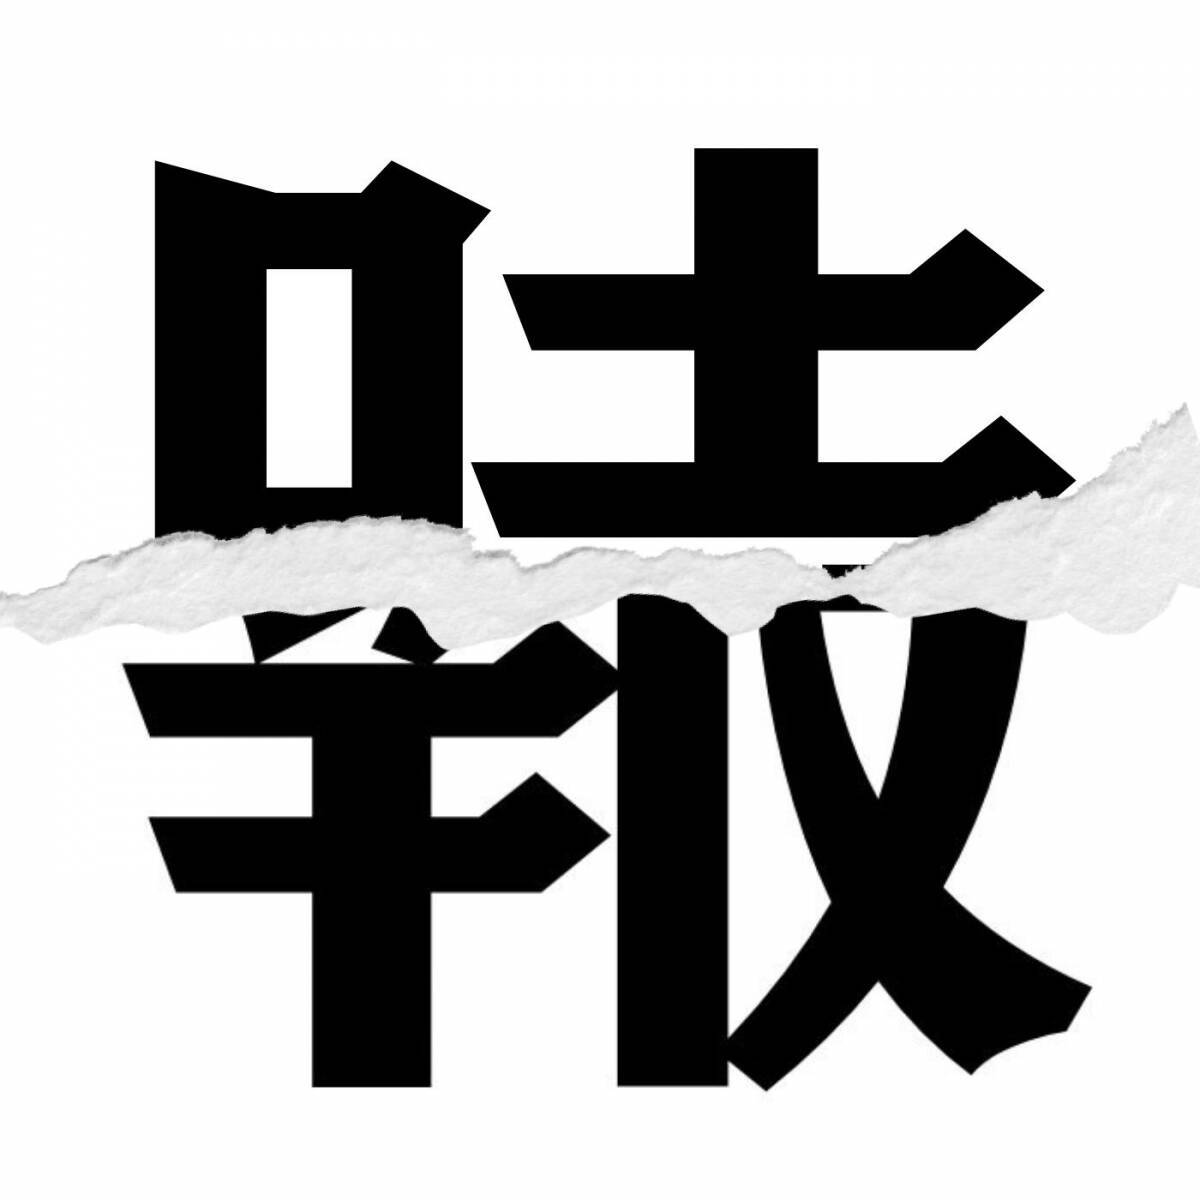 漢字クイズ Vol 1 分割された漢字二文字からなる言葉を考えよう エキサイトニュース